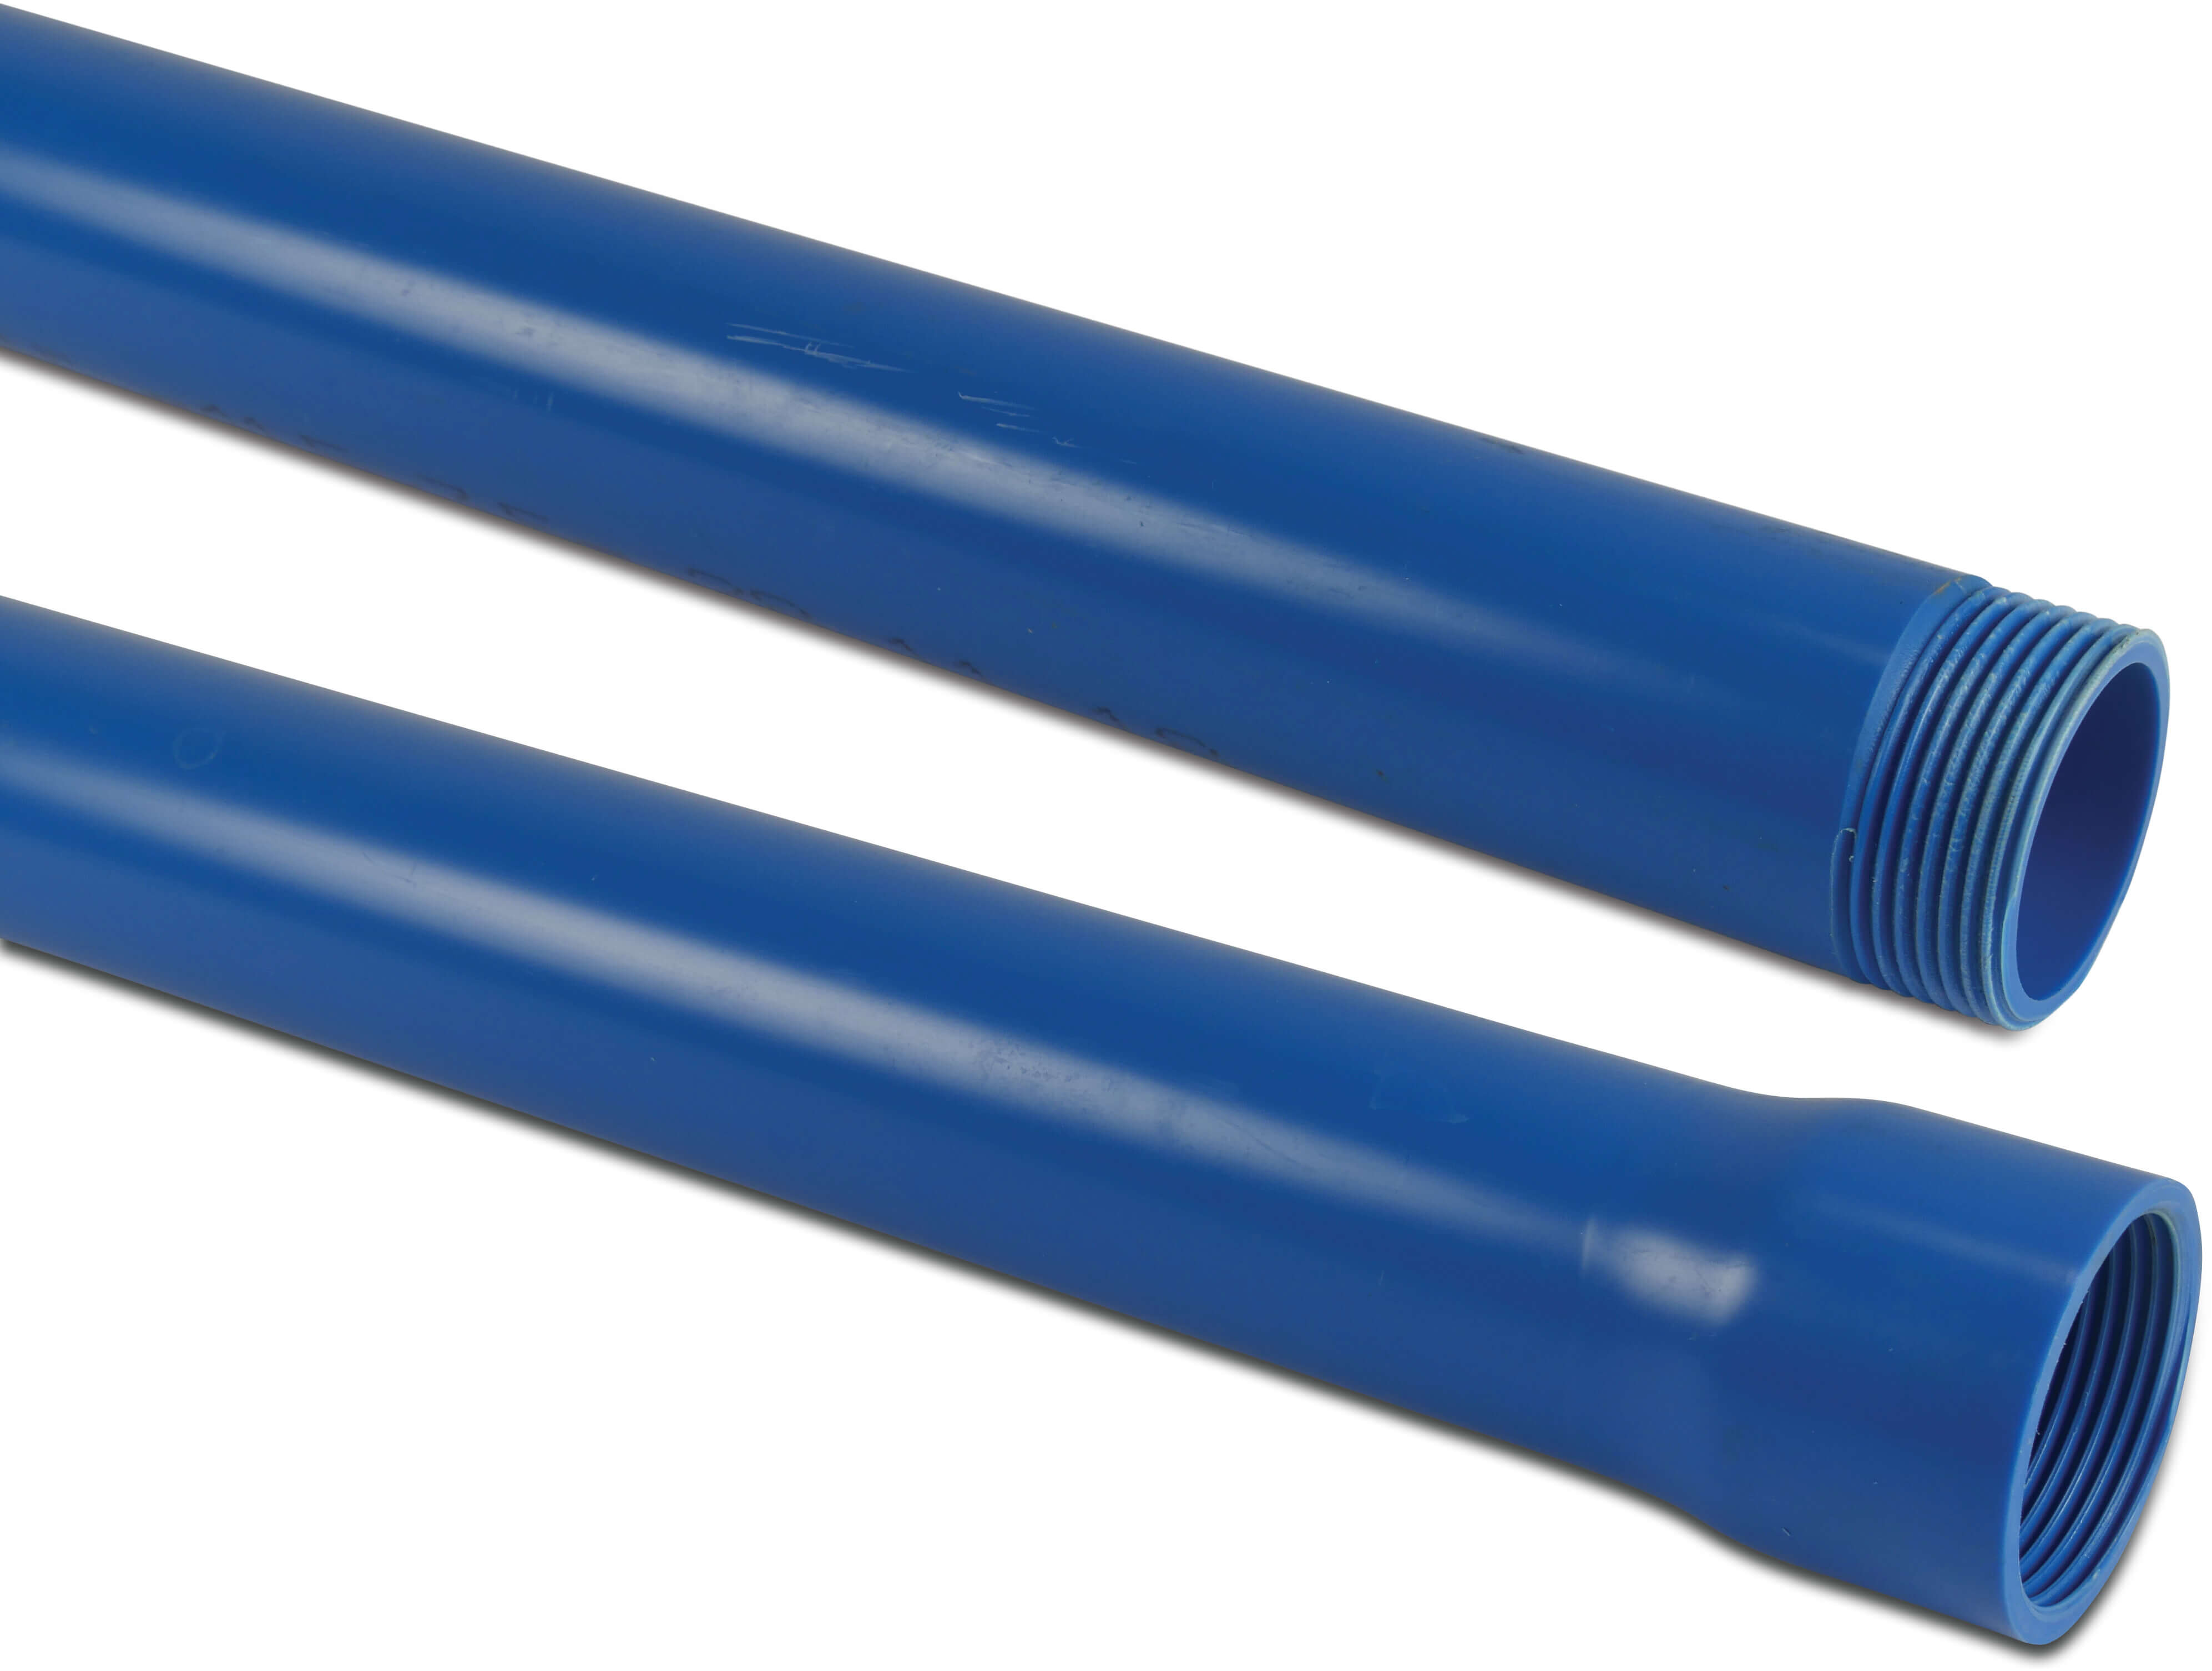 Rura przedłużająca PVC-U 1 1/4" GW x GZ niebieski 2m